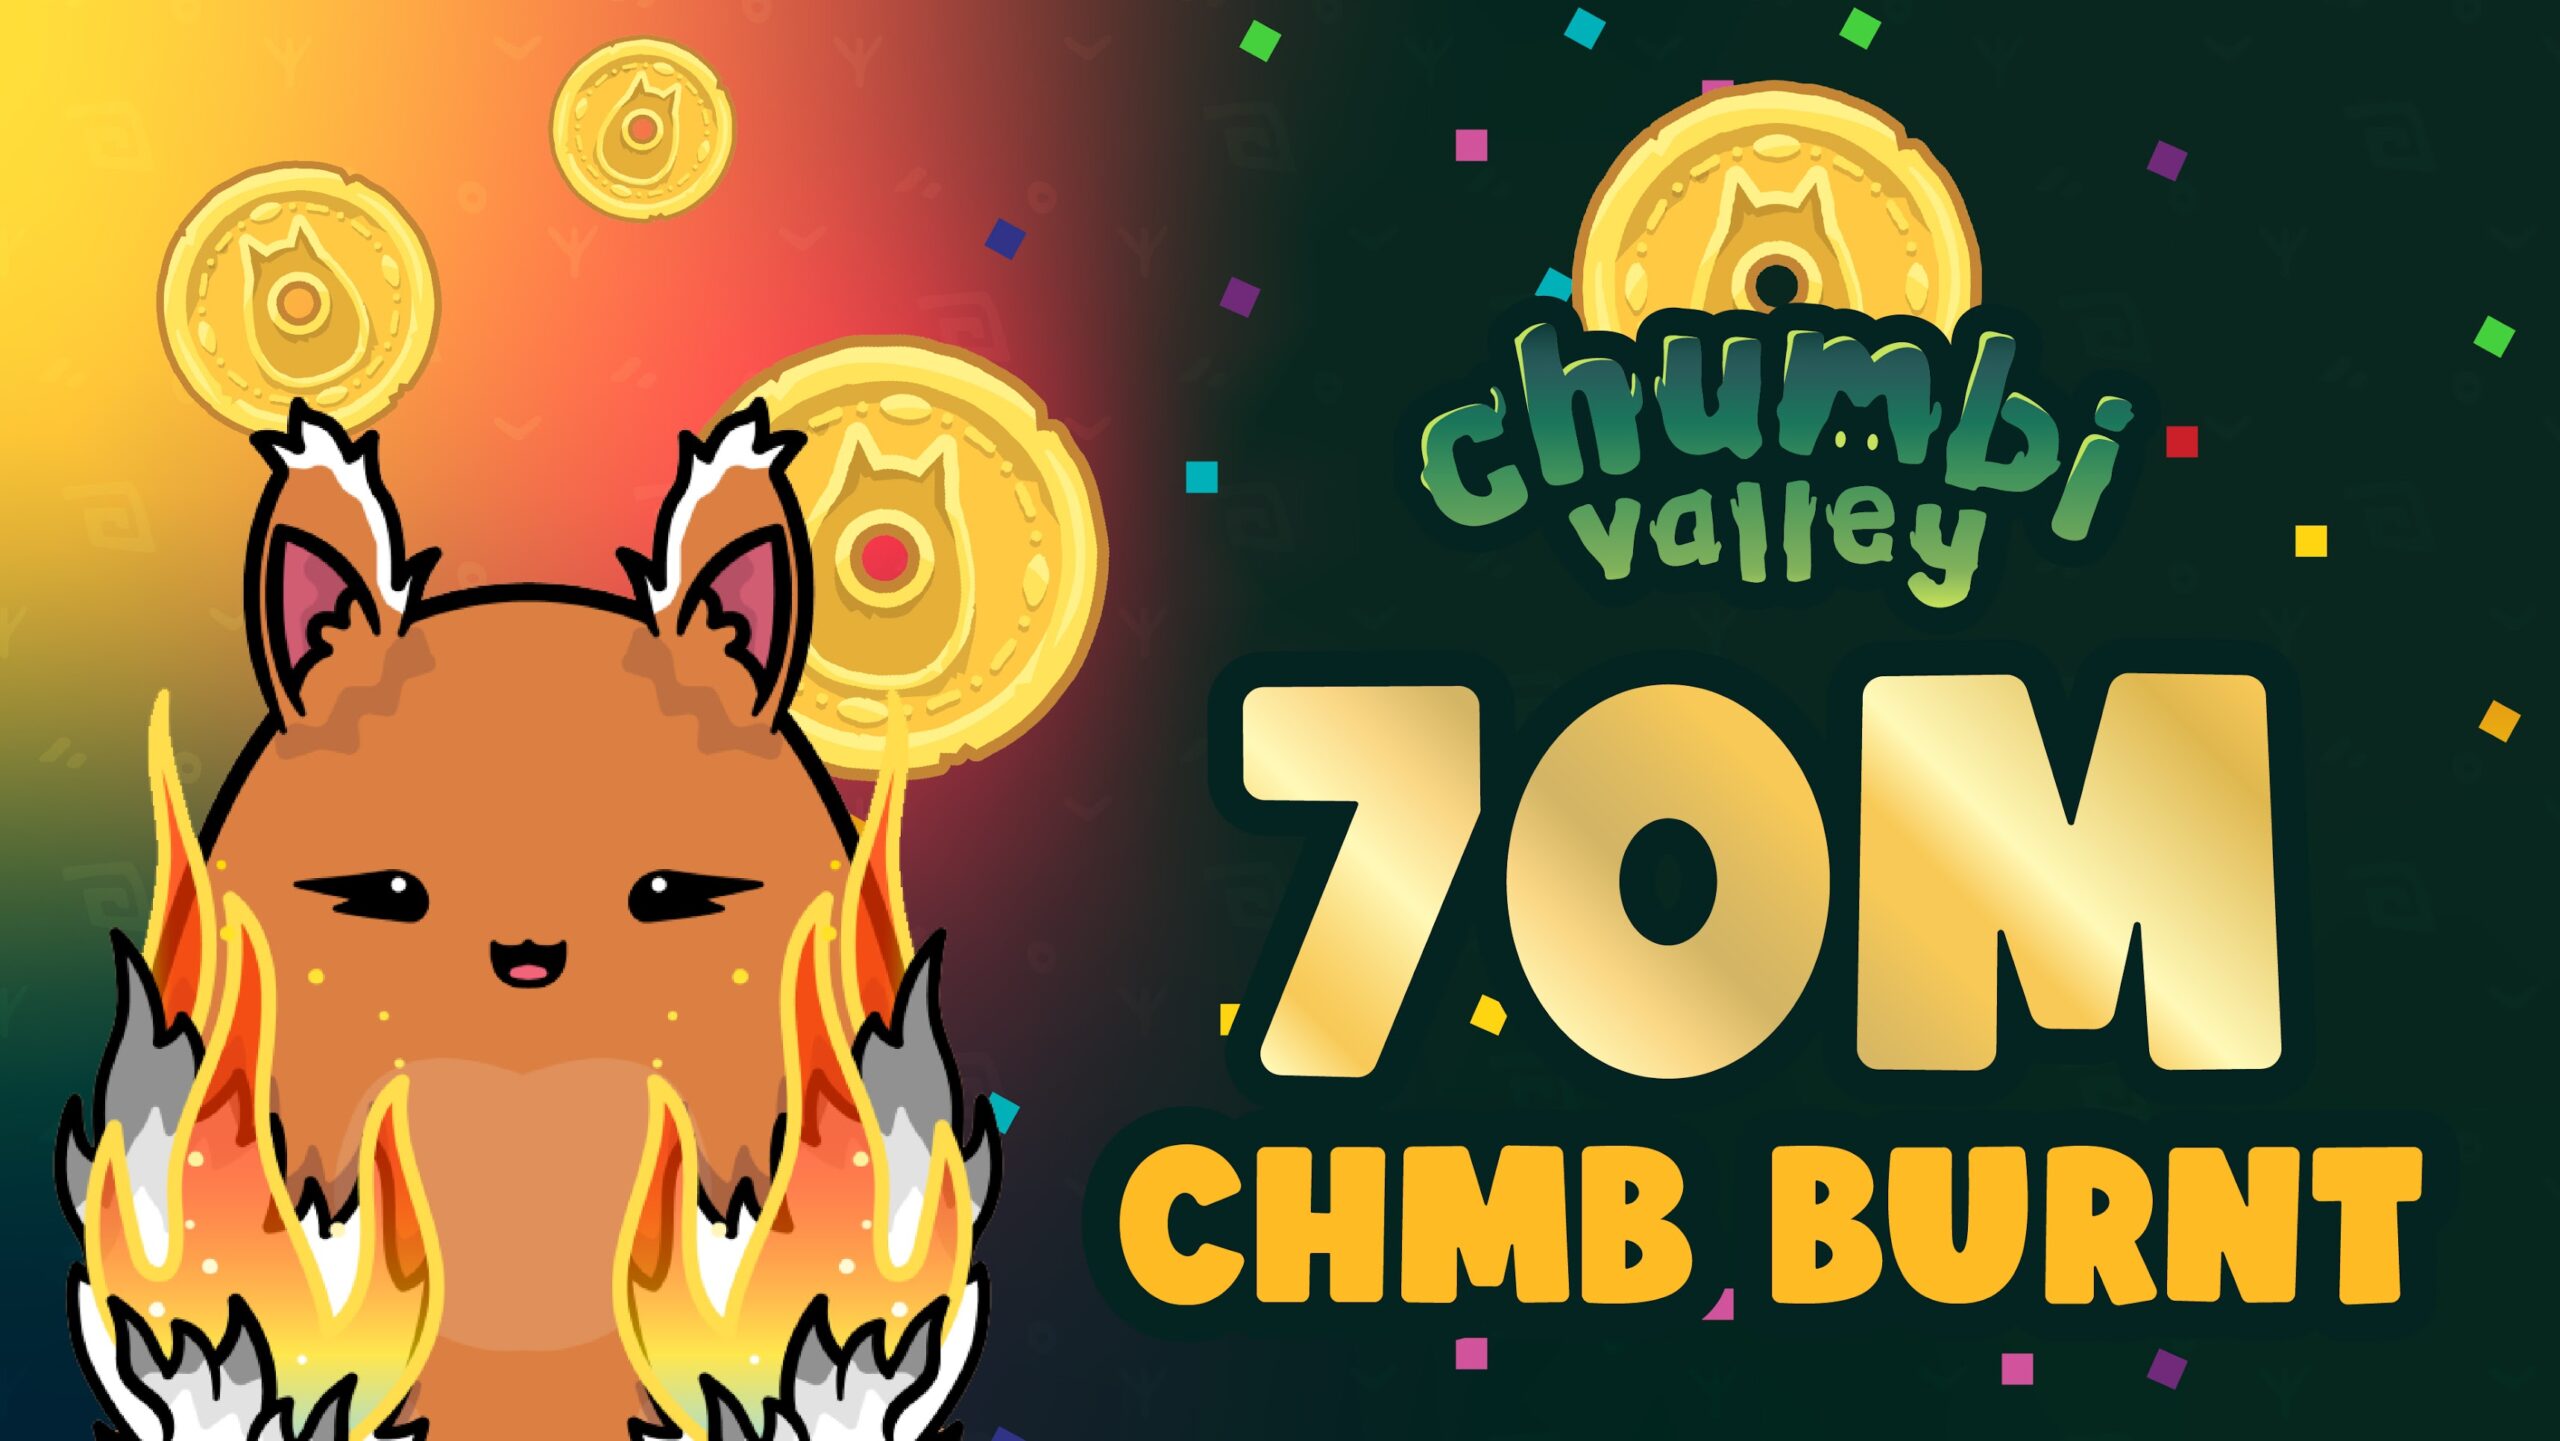 Chumbi Valley Burns 70M CHMB Tokens